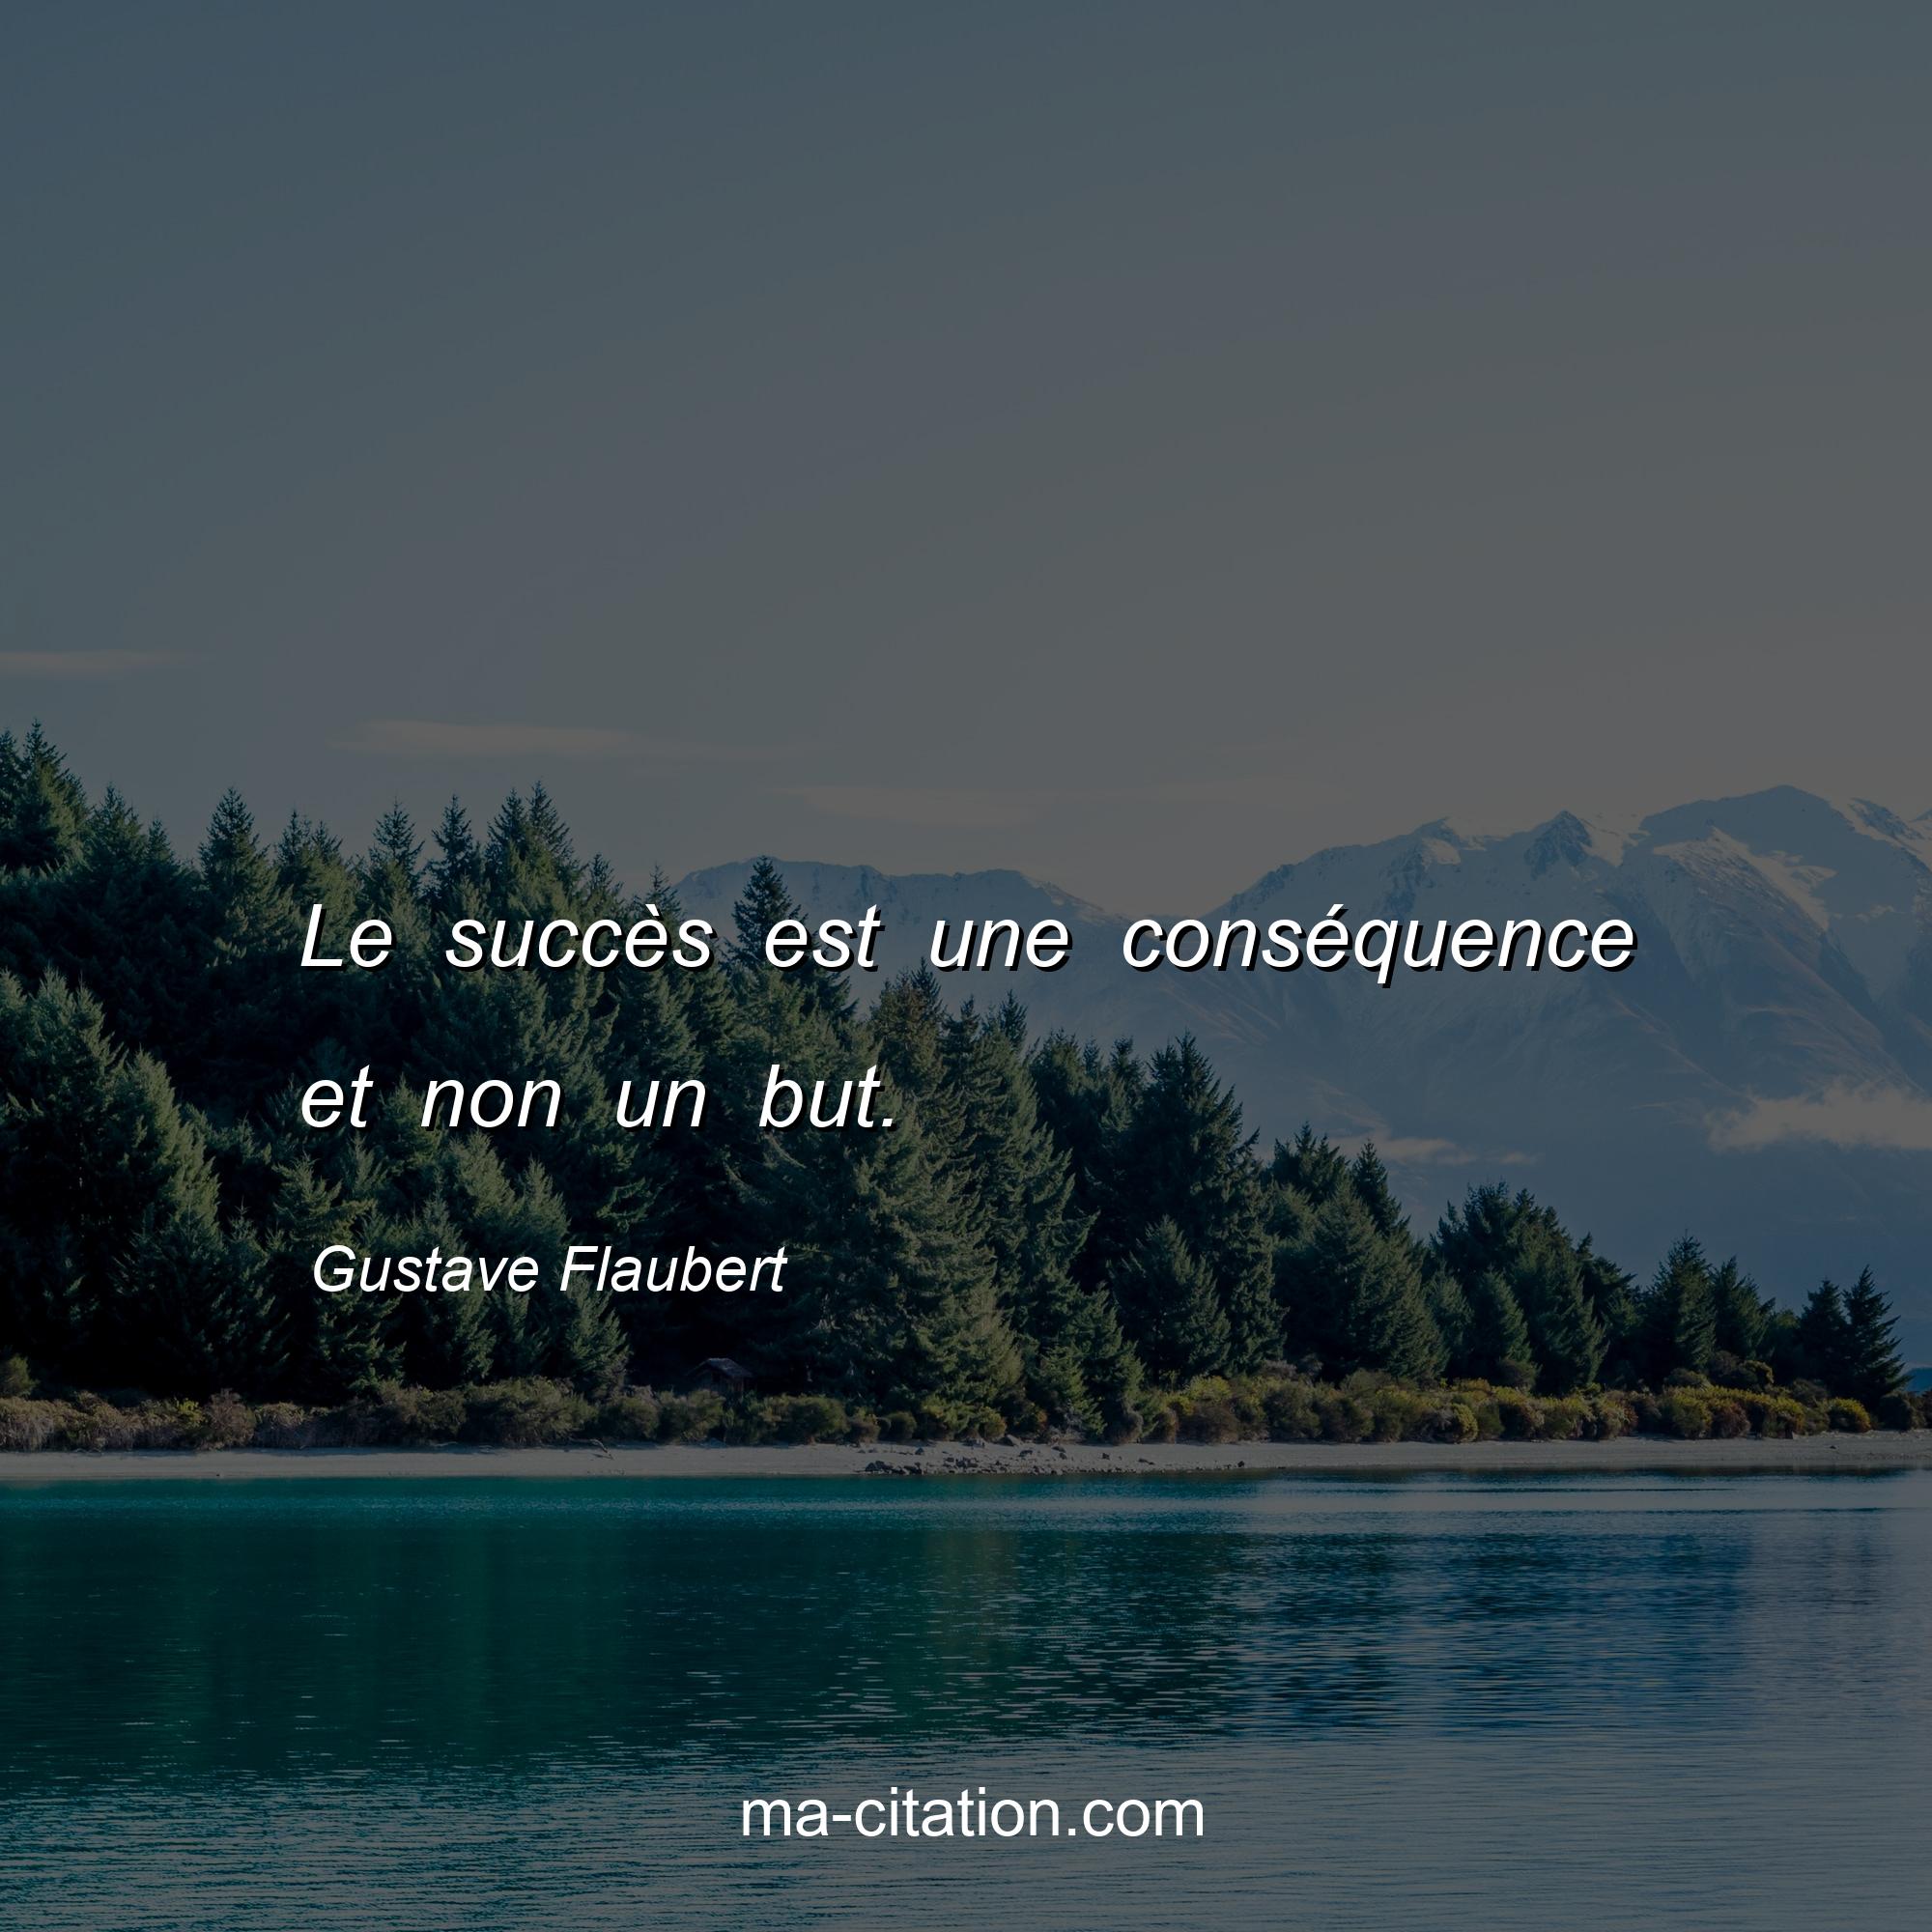 Gustave Flaubert : Le succès est une conséquence et non un but.